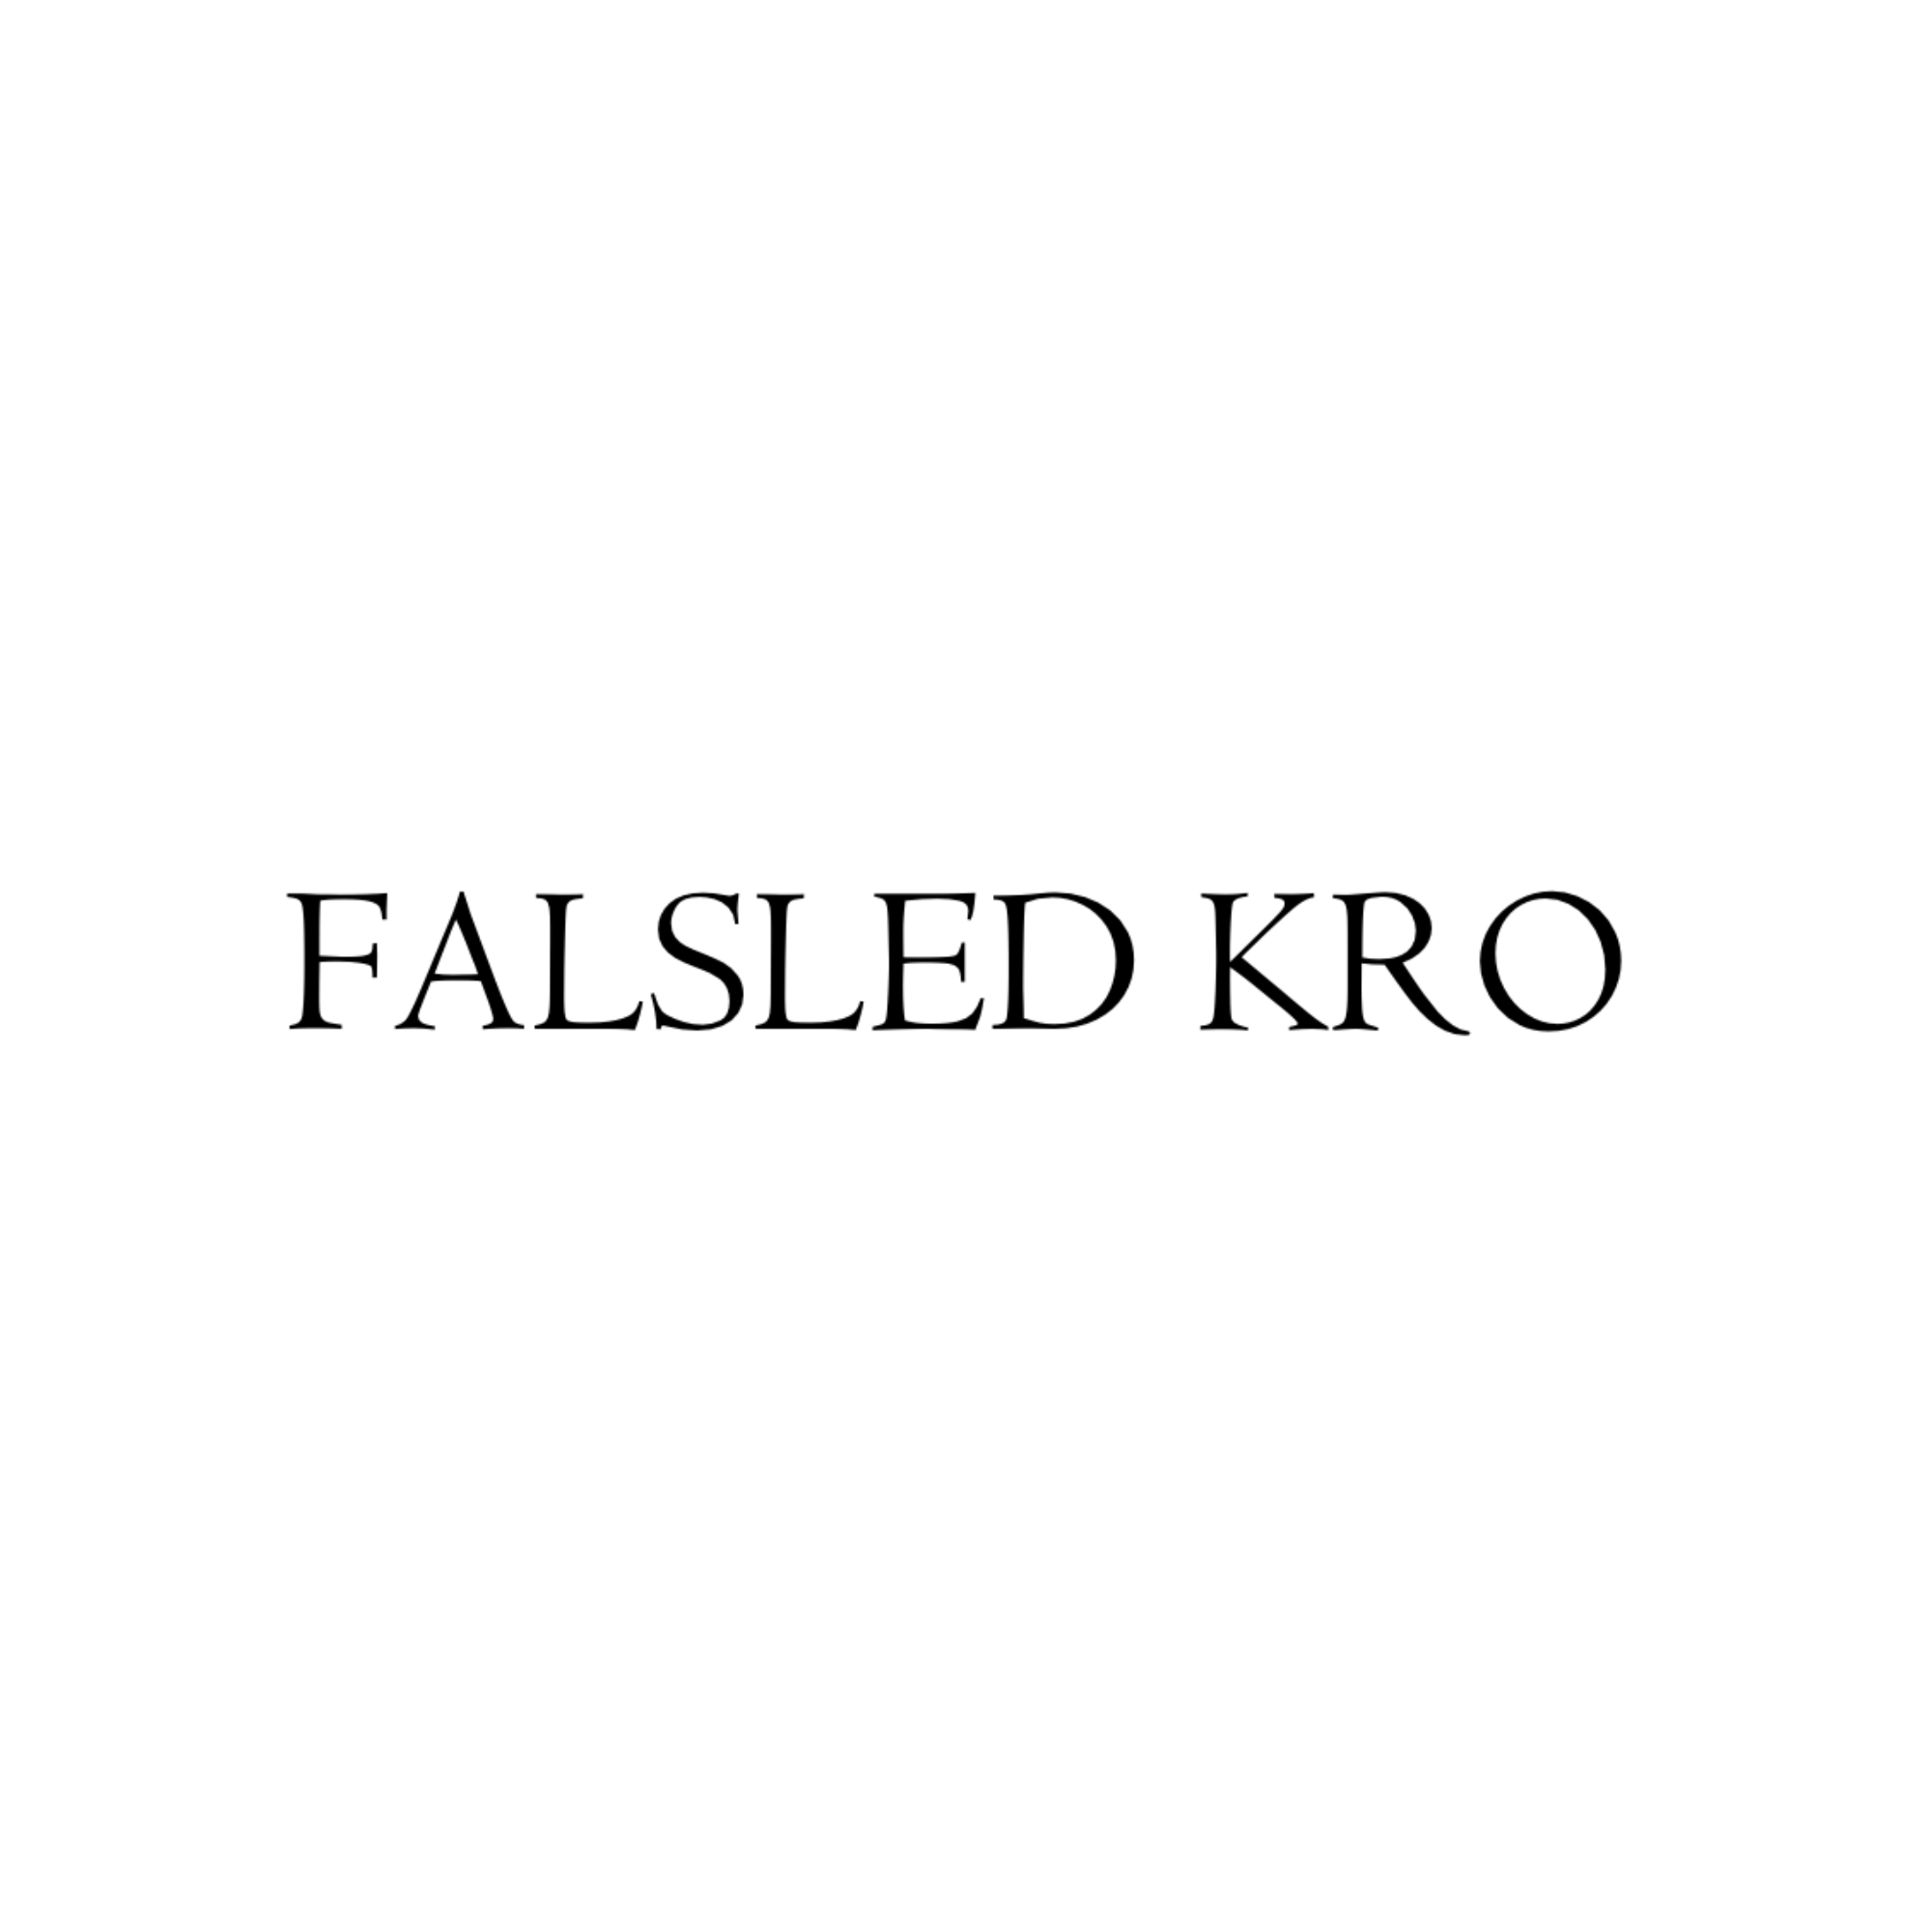 falsed-kro